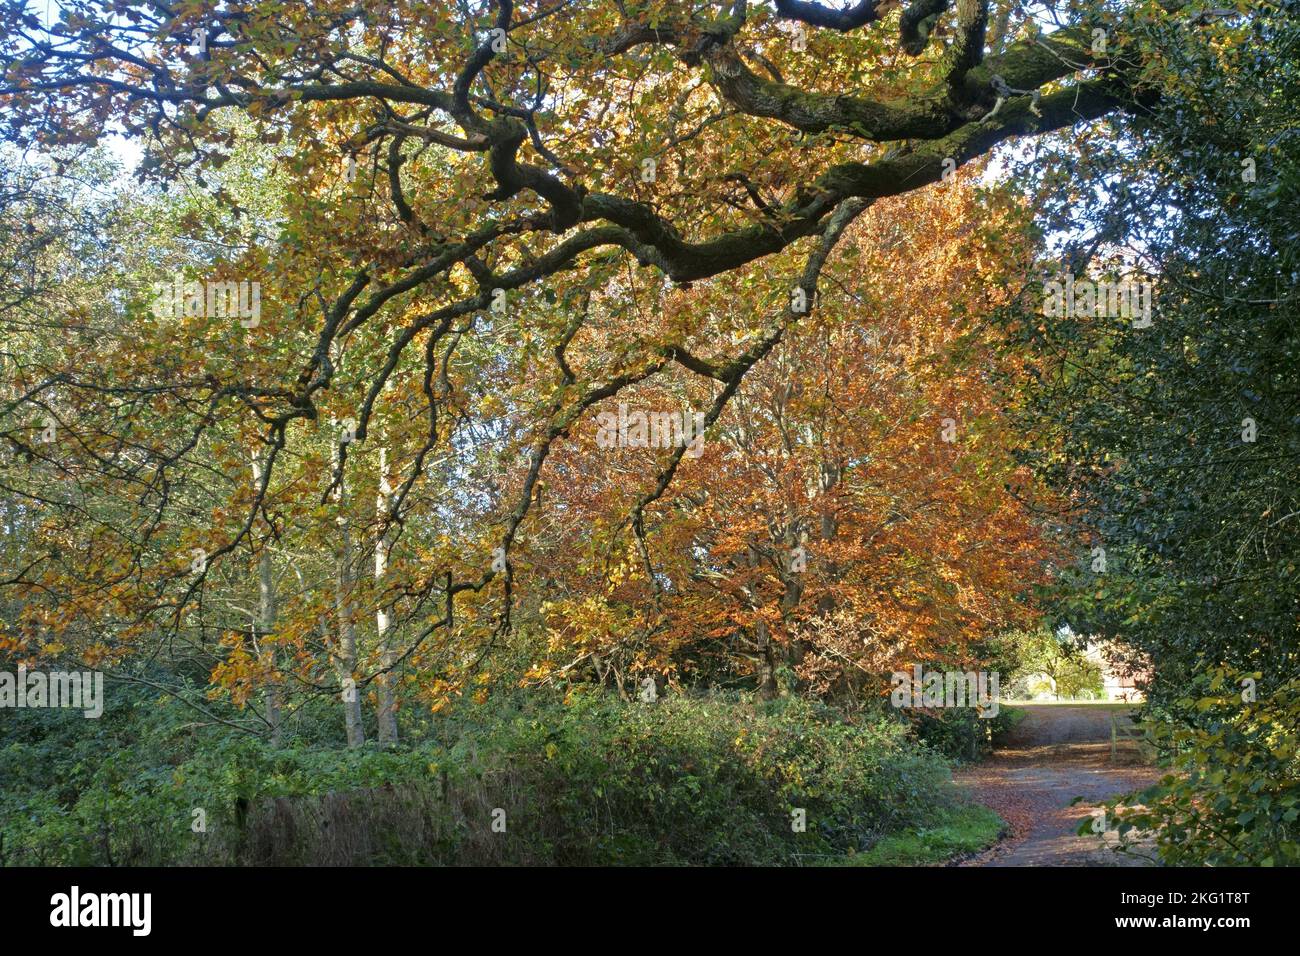 Green's et bruns d'arbres et de plantes sur une petite ruelle de campagne à Kintbury en automne, Berkshire, novembre Banque D'Images